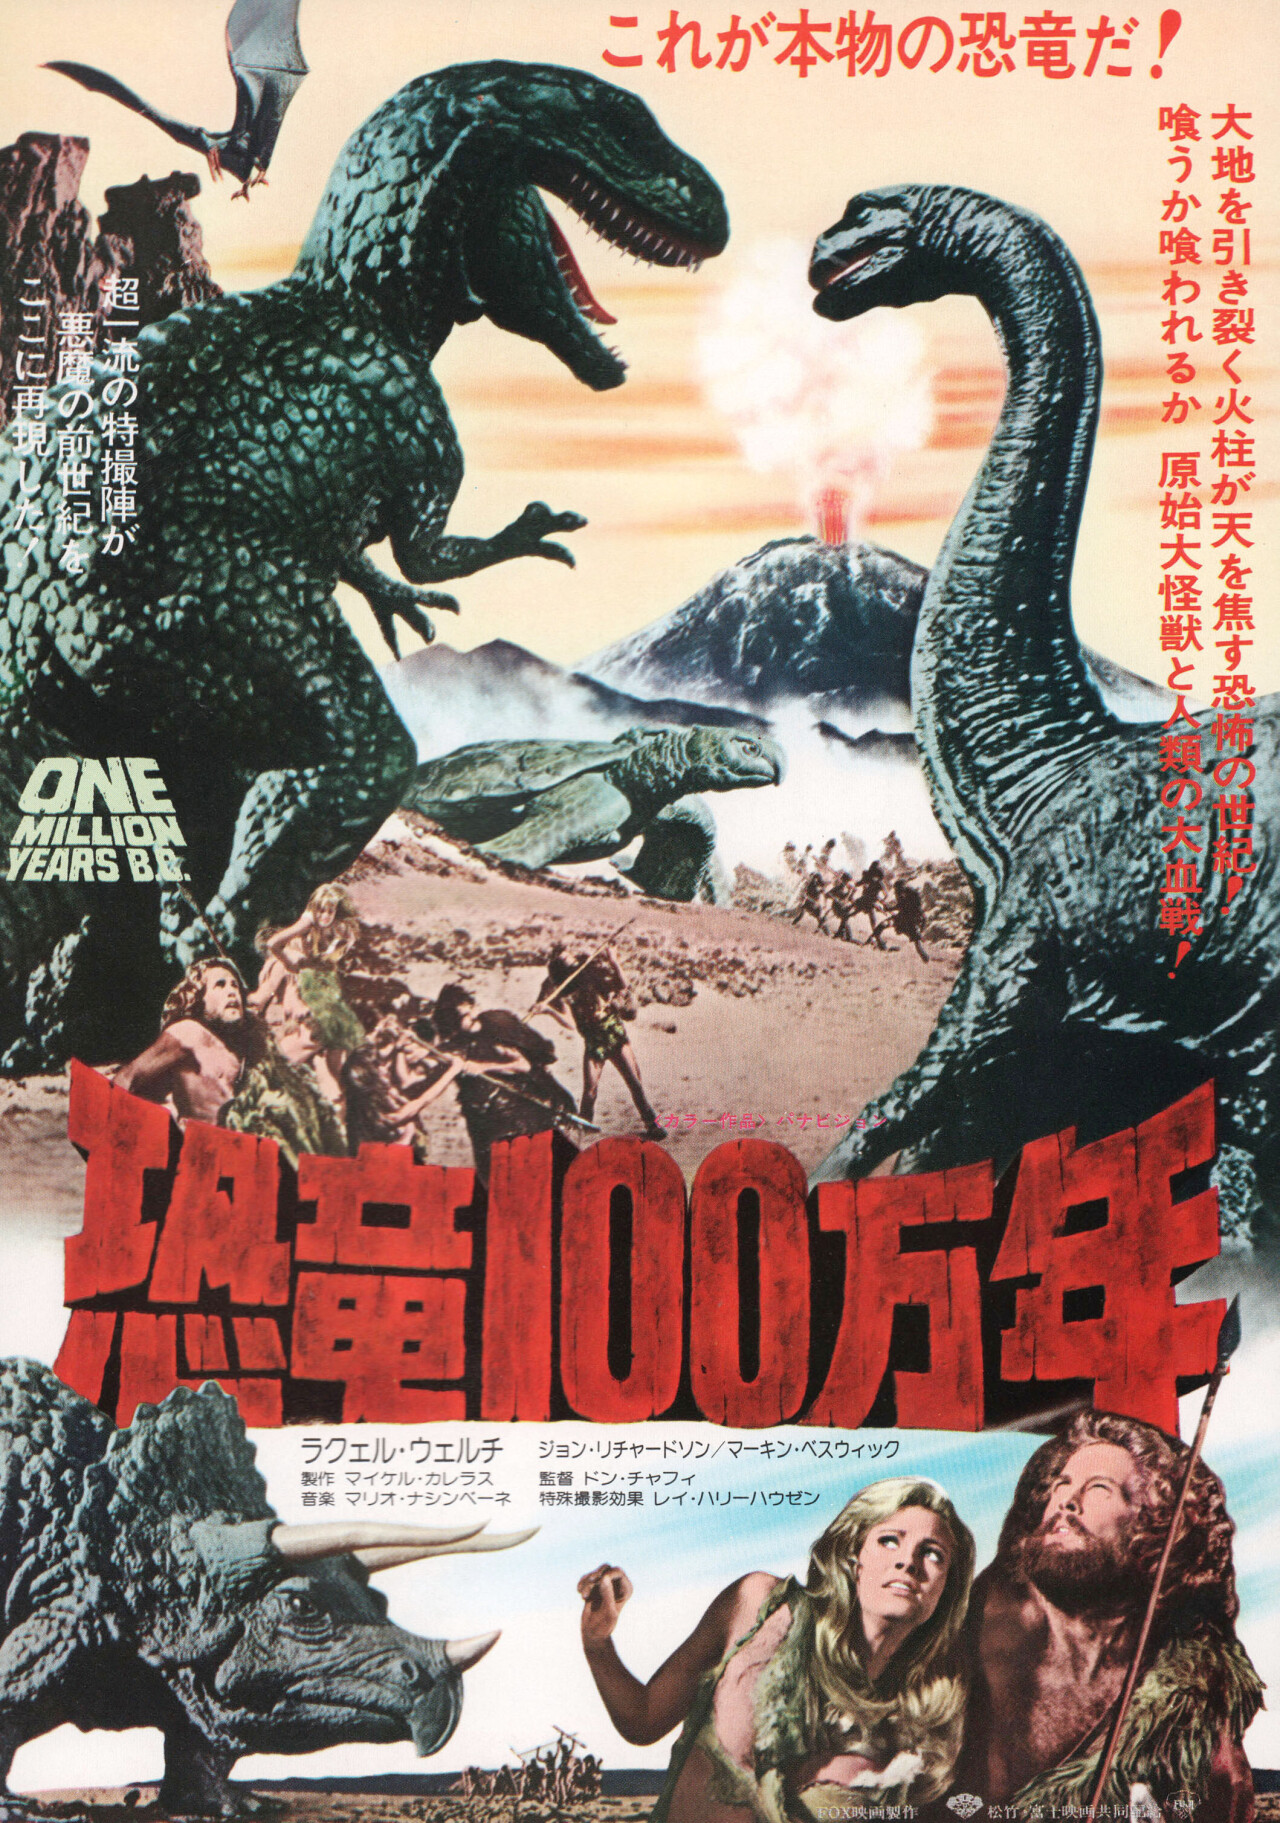 Миллион лет до нашей эры (One Million Years B.C., 1966), режиссёр Дон Чэффи, японский постер к фильму (Hummer horror, 1977 год)